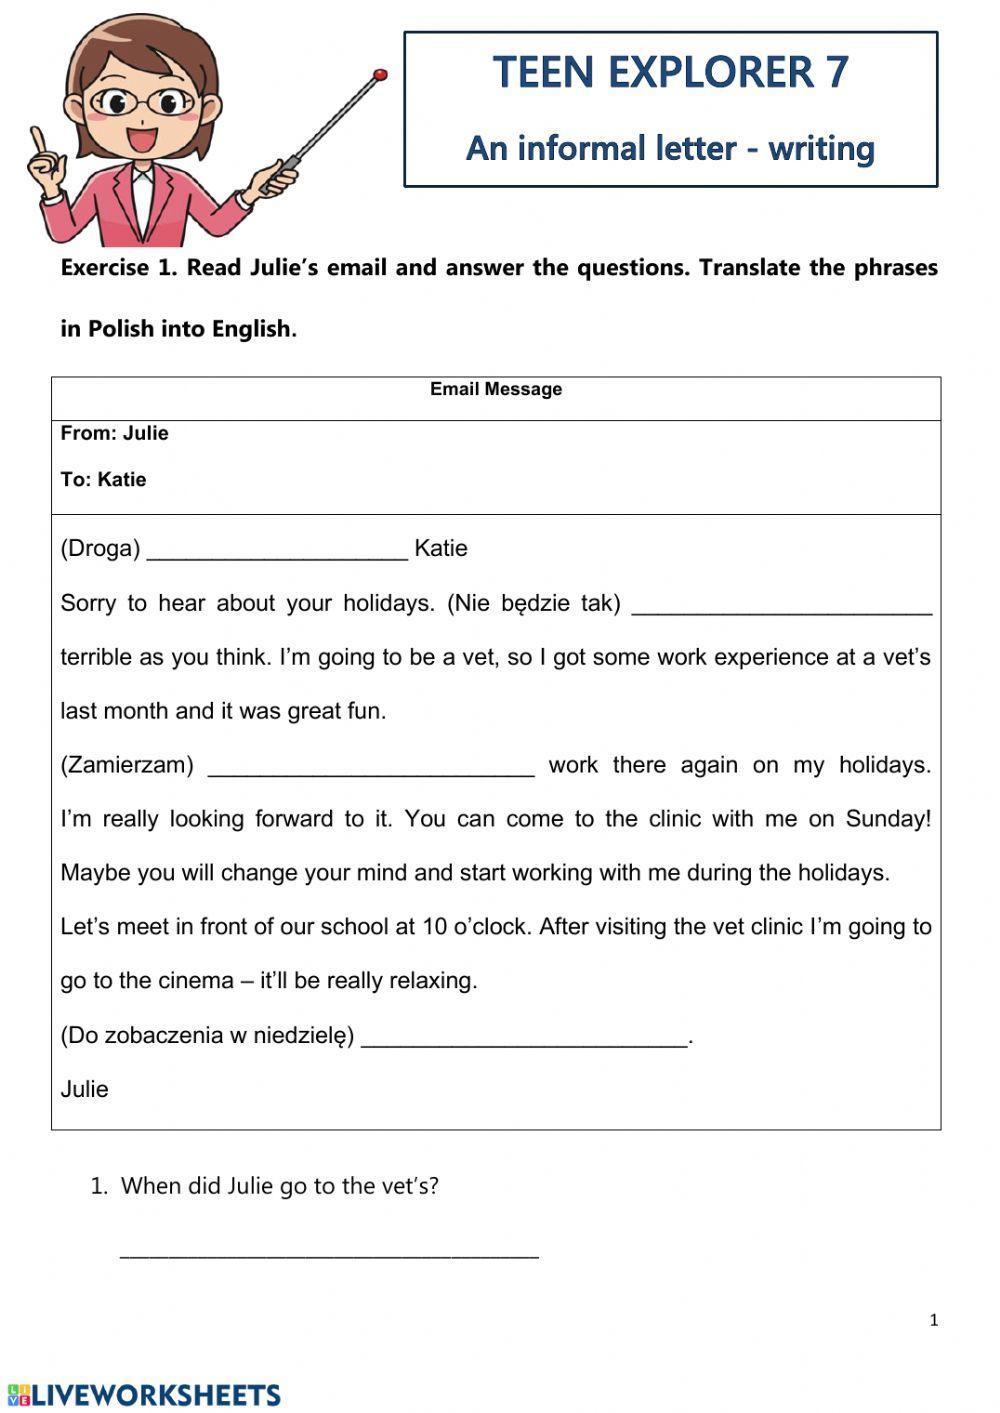 Teen Explorer 7 An informal letter - writing.